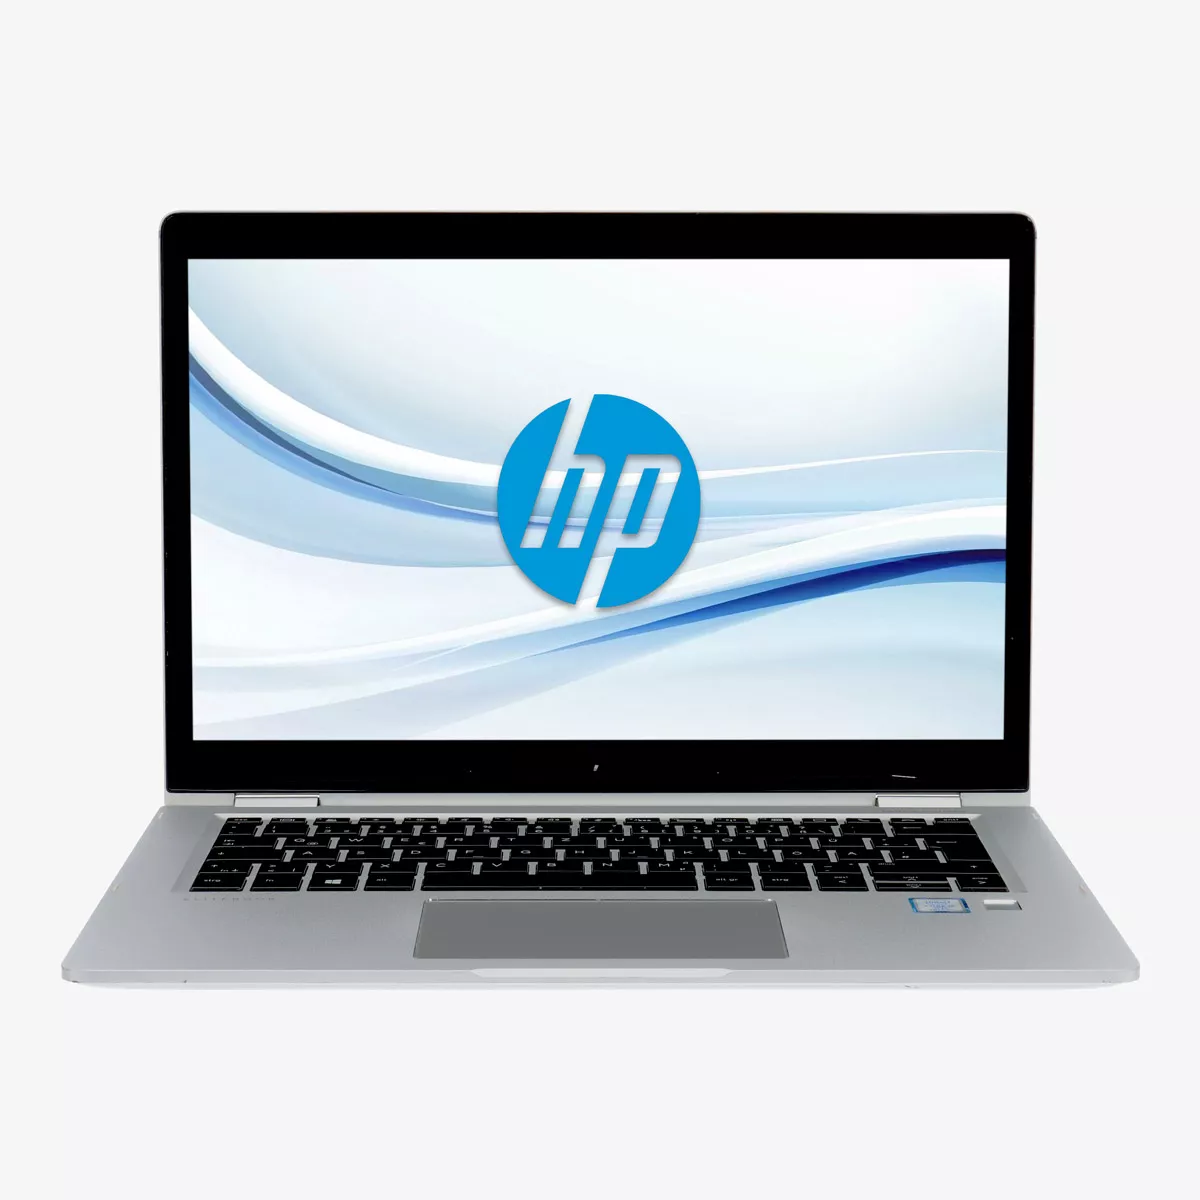 HP EliteBook x360 1030 G2 Core i5 7300U Touch 8 GB 500 GB M.2 nVME SSD Webcam A